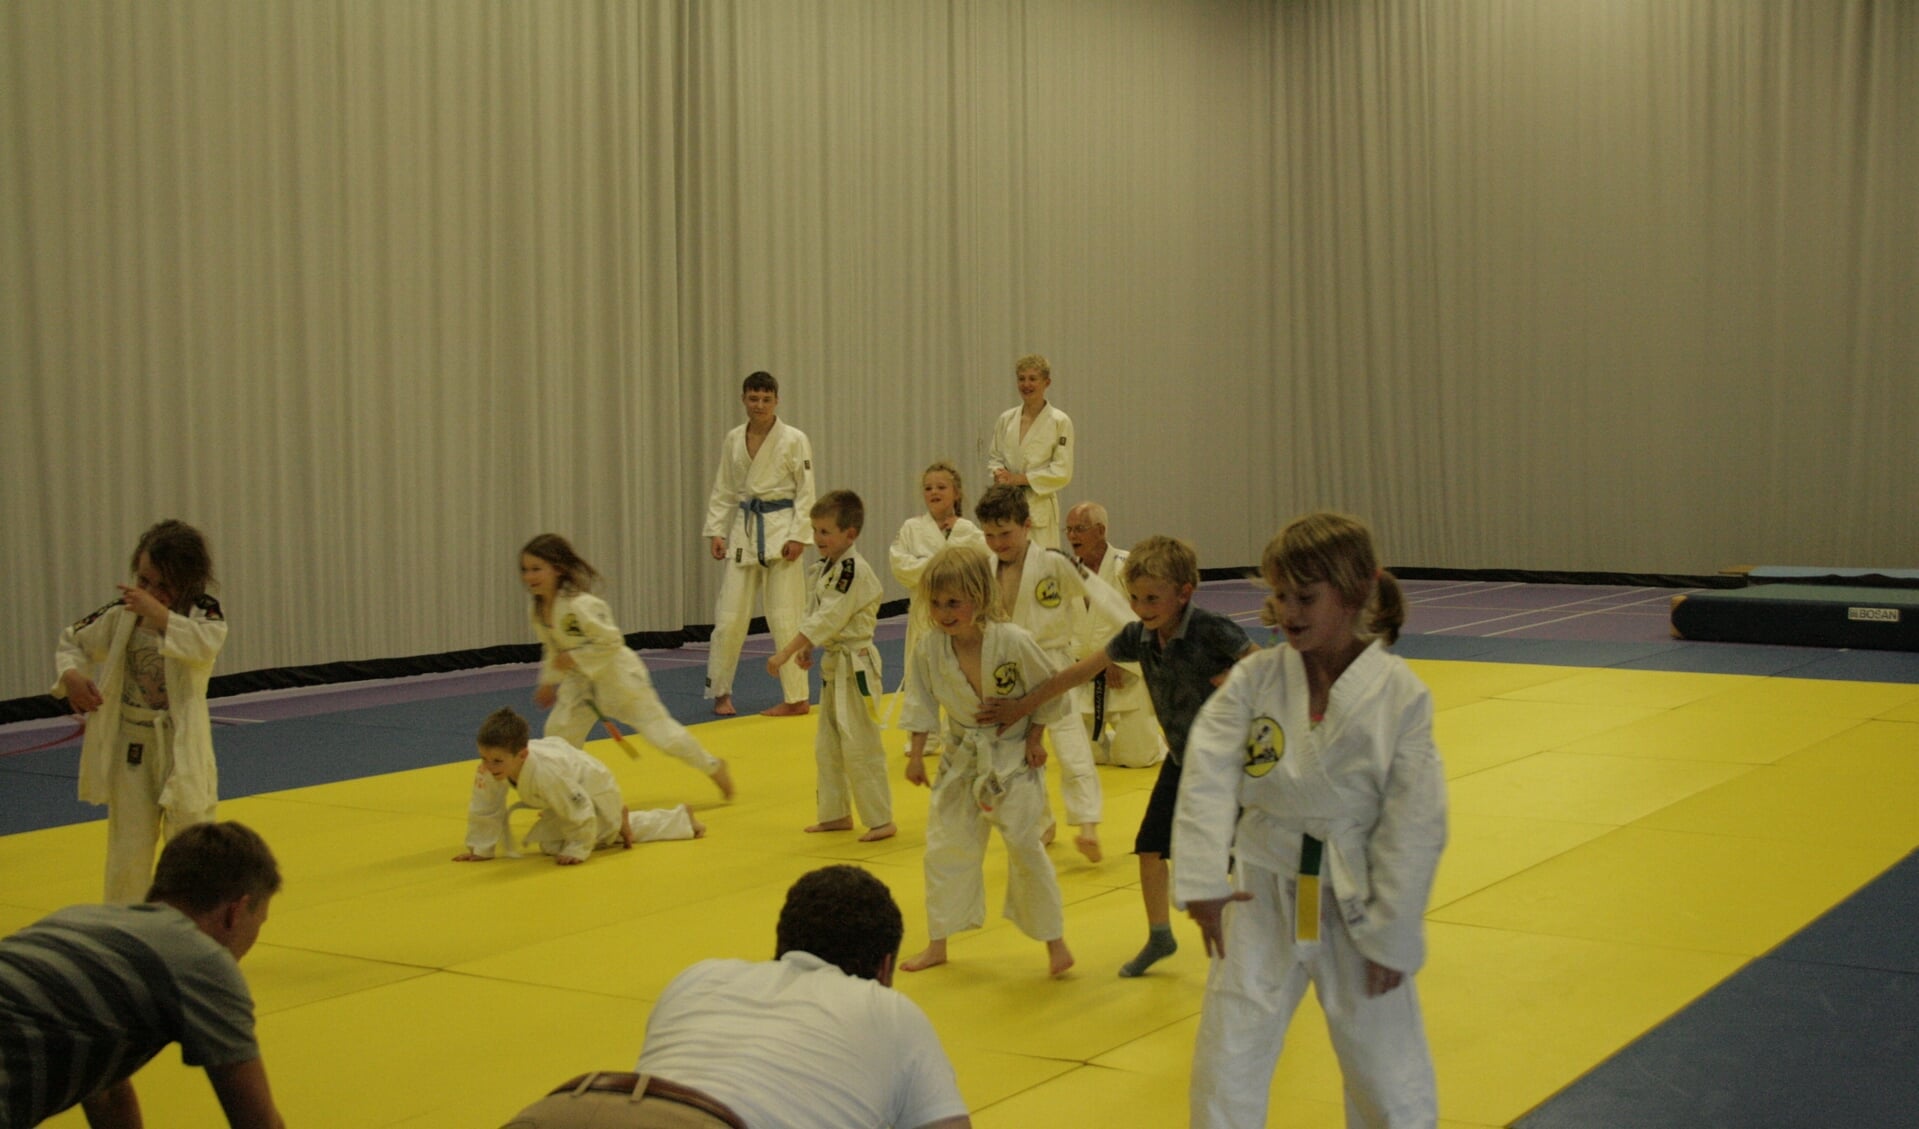 Een geliefd spelletje bij de judo is 'schapen scheren'. Deze keer moeten de ouders worden gevangen.